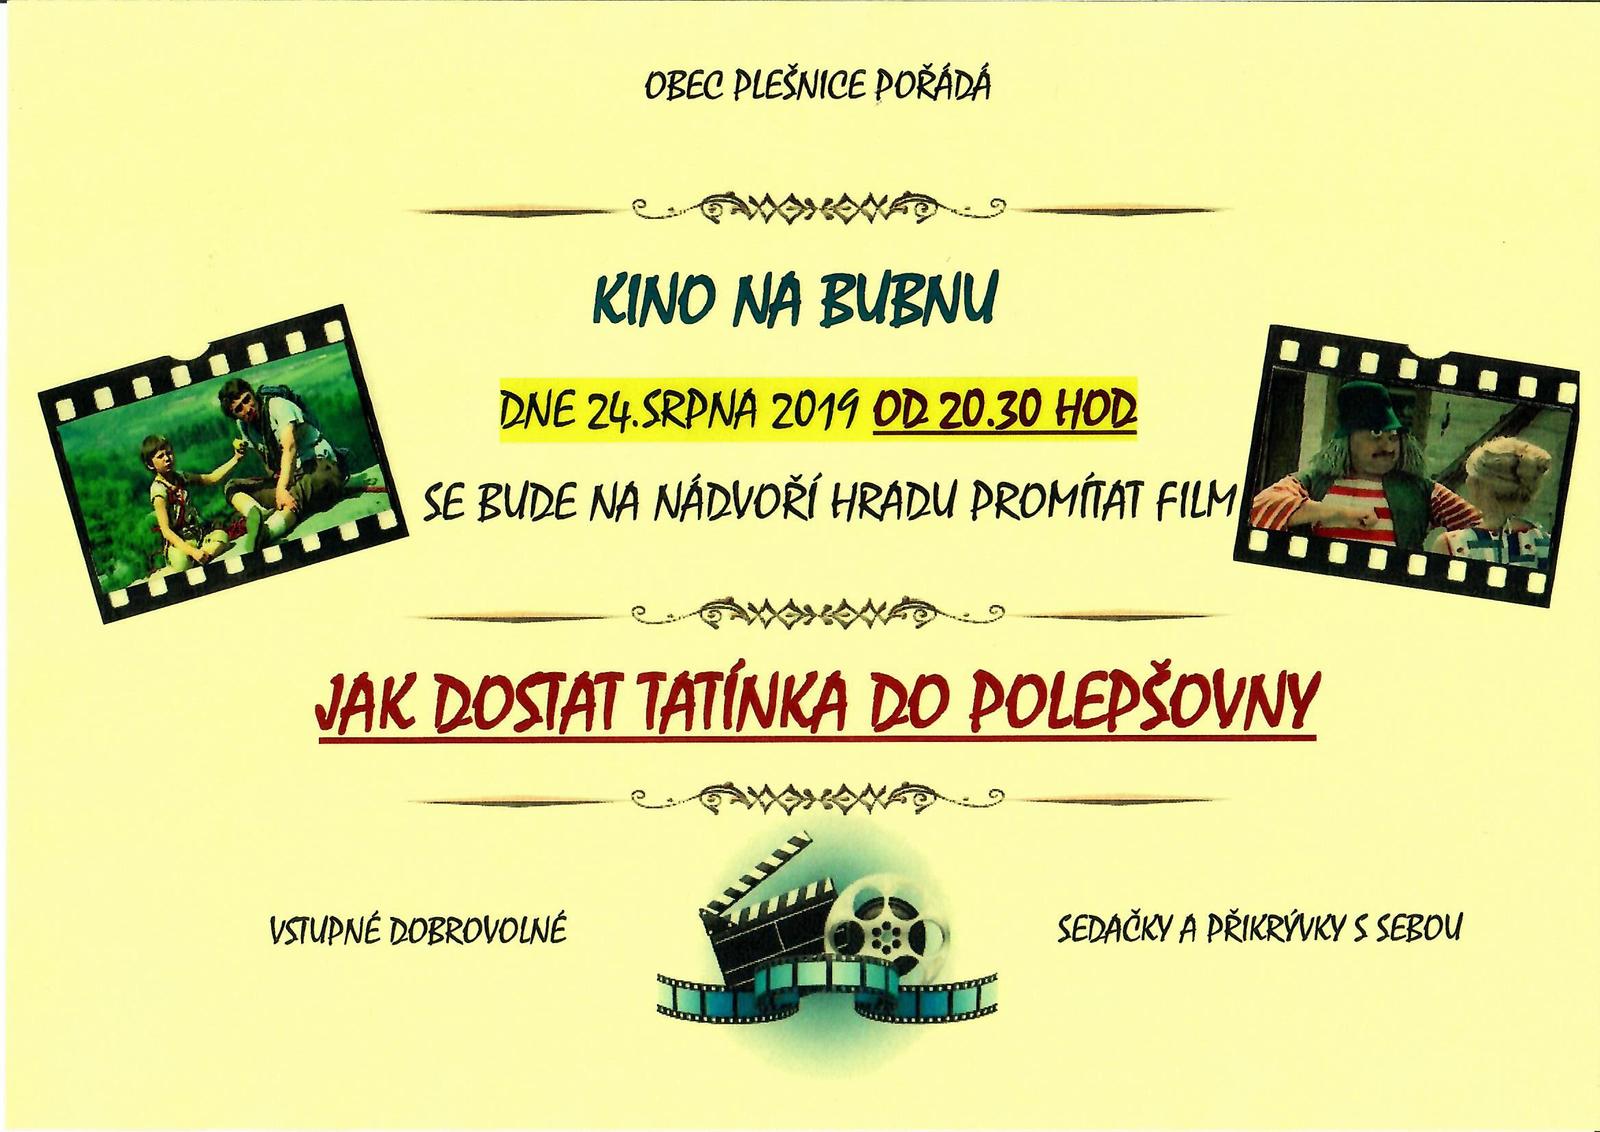 Pozvánka na promítání filmu na hradě Buben 24.srpna 2019